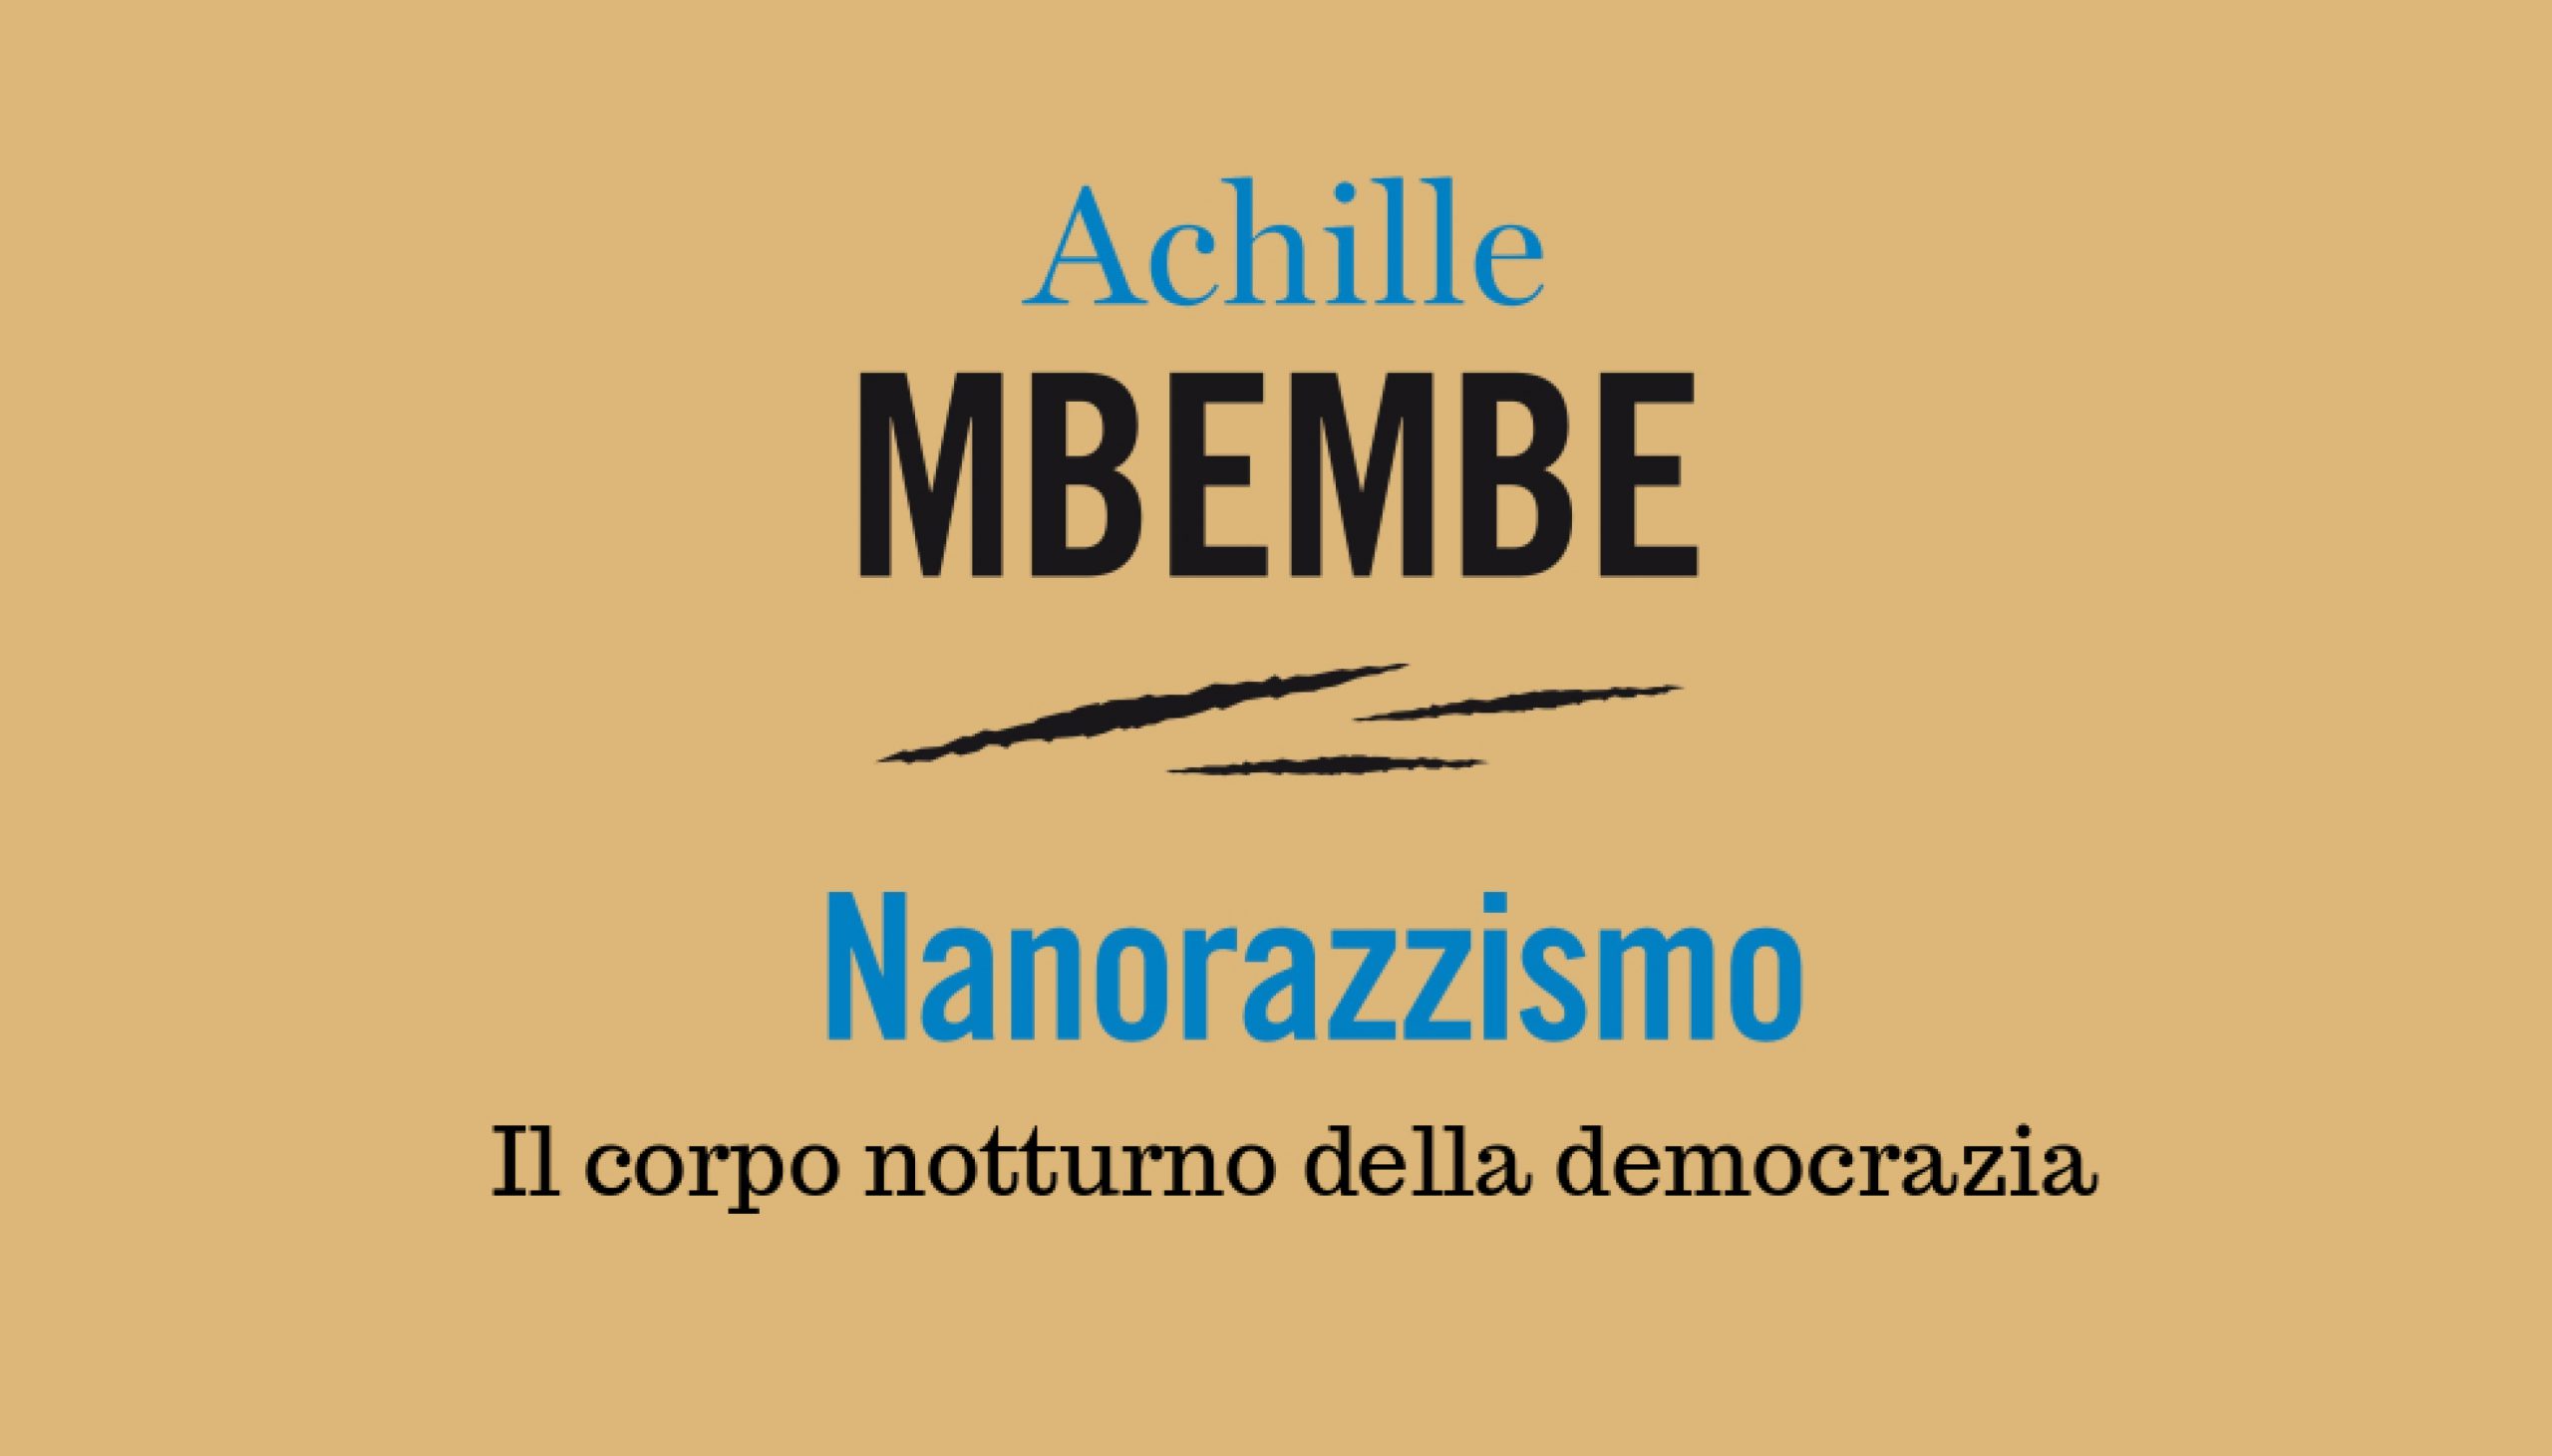 Achille Mbembe, “Nanorazzismo”